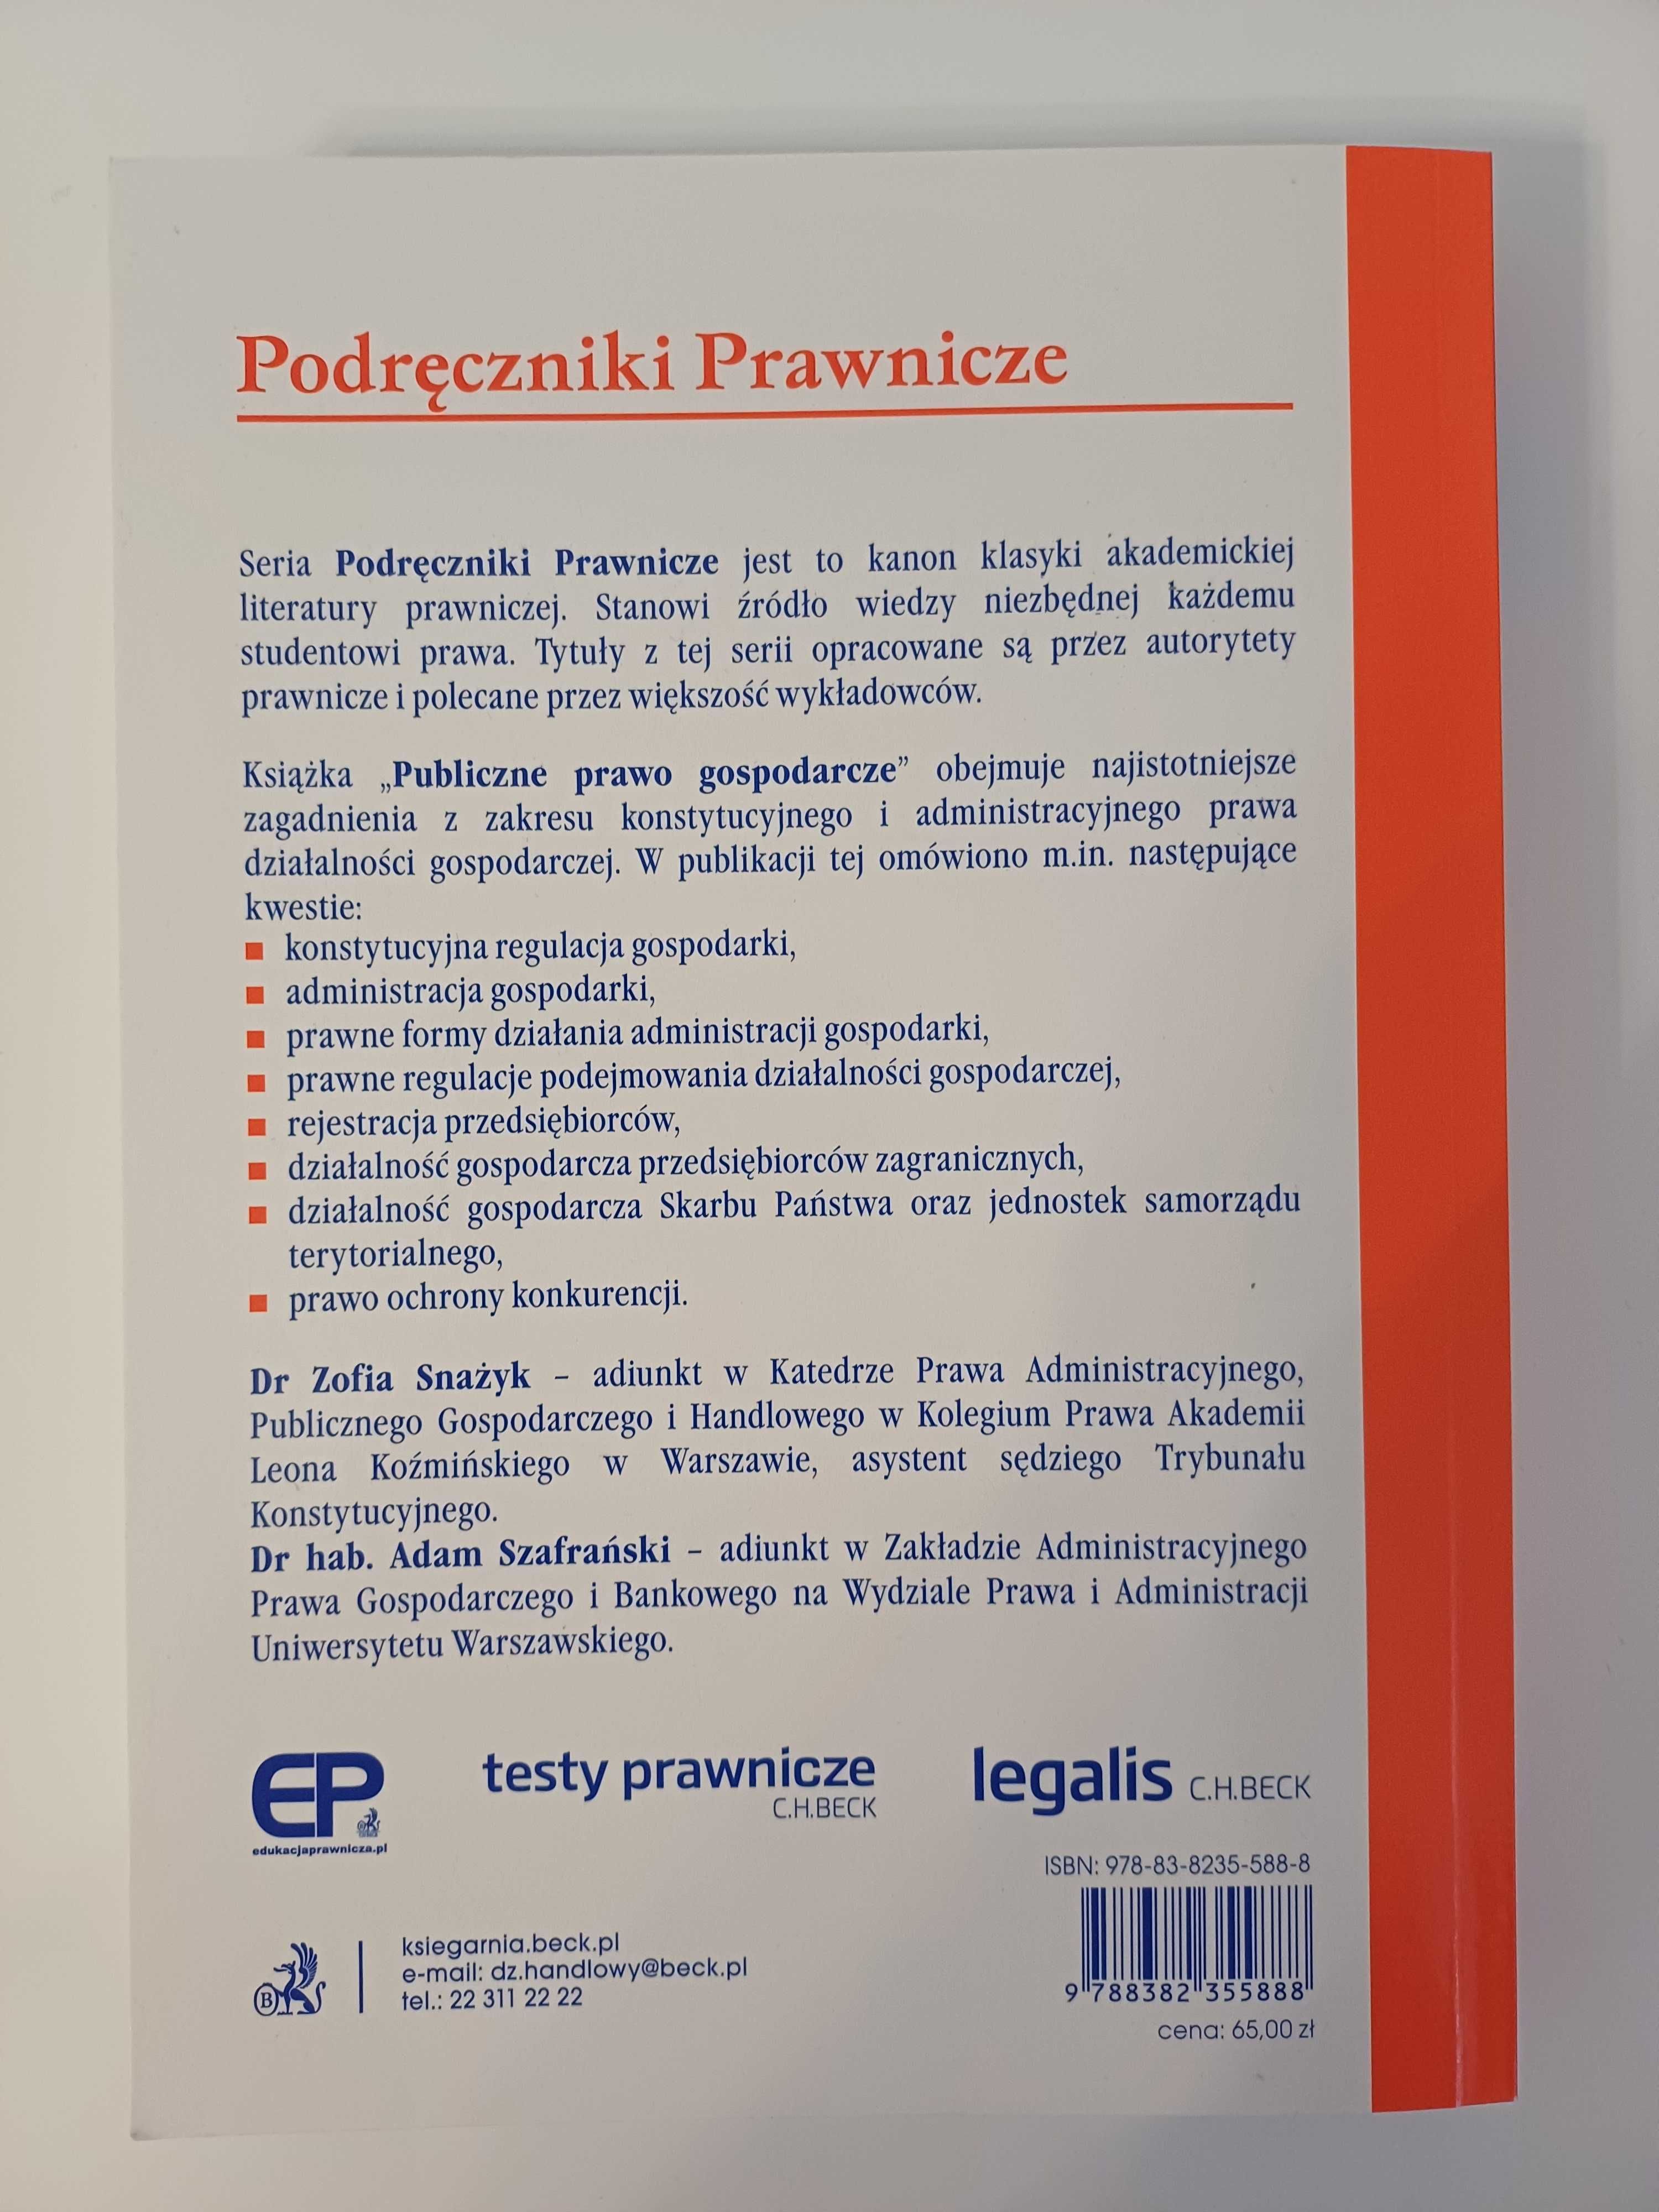 Publiczne prawo gospodarcze - Z. Snażyk A. Szafrański